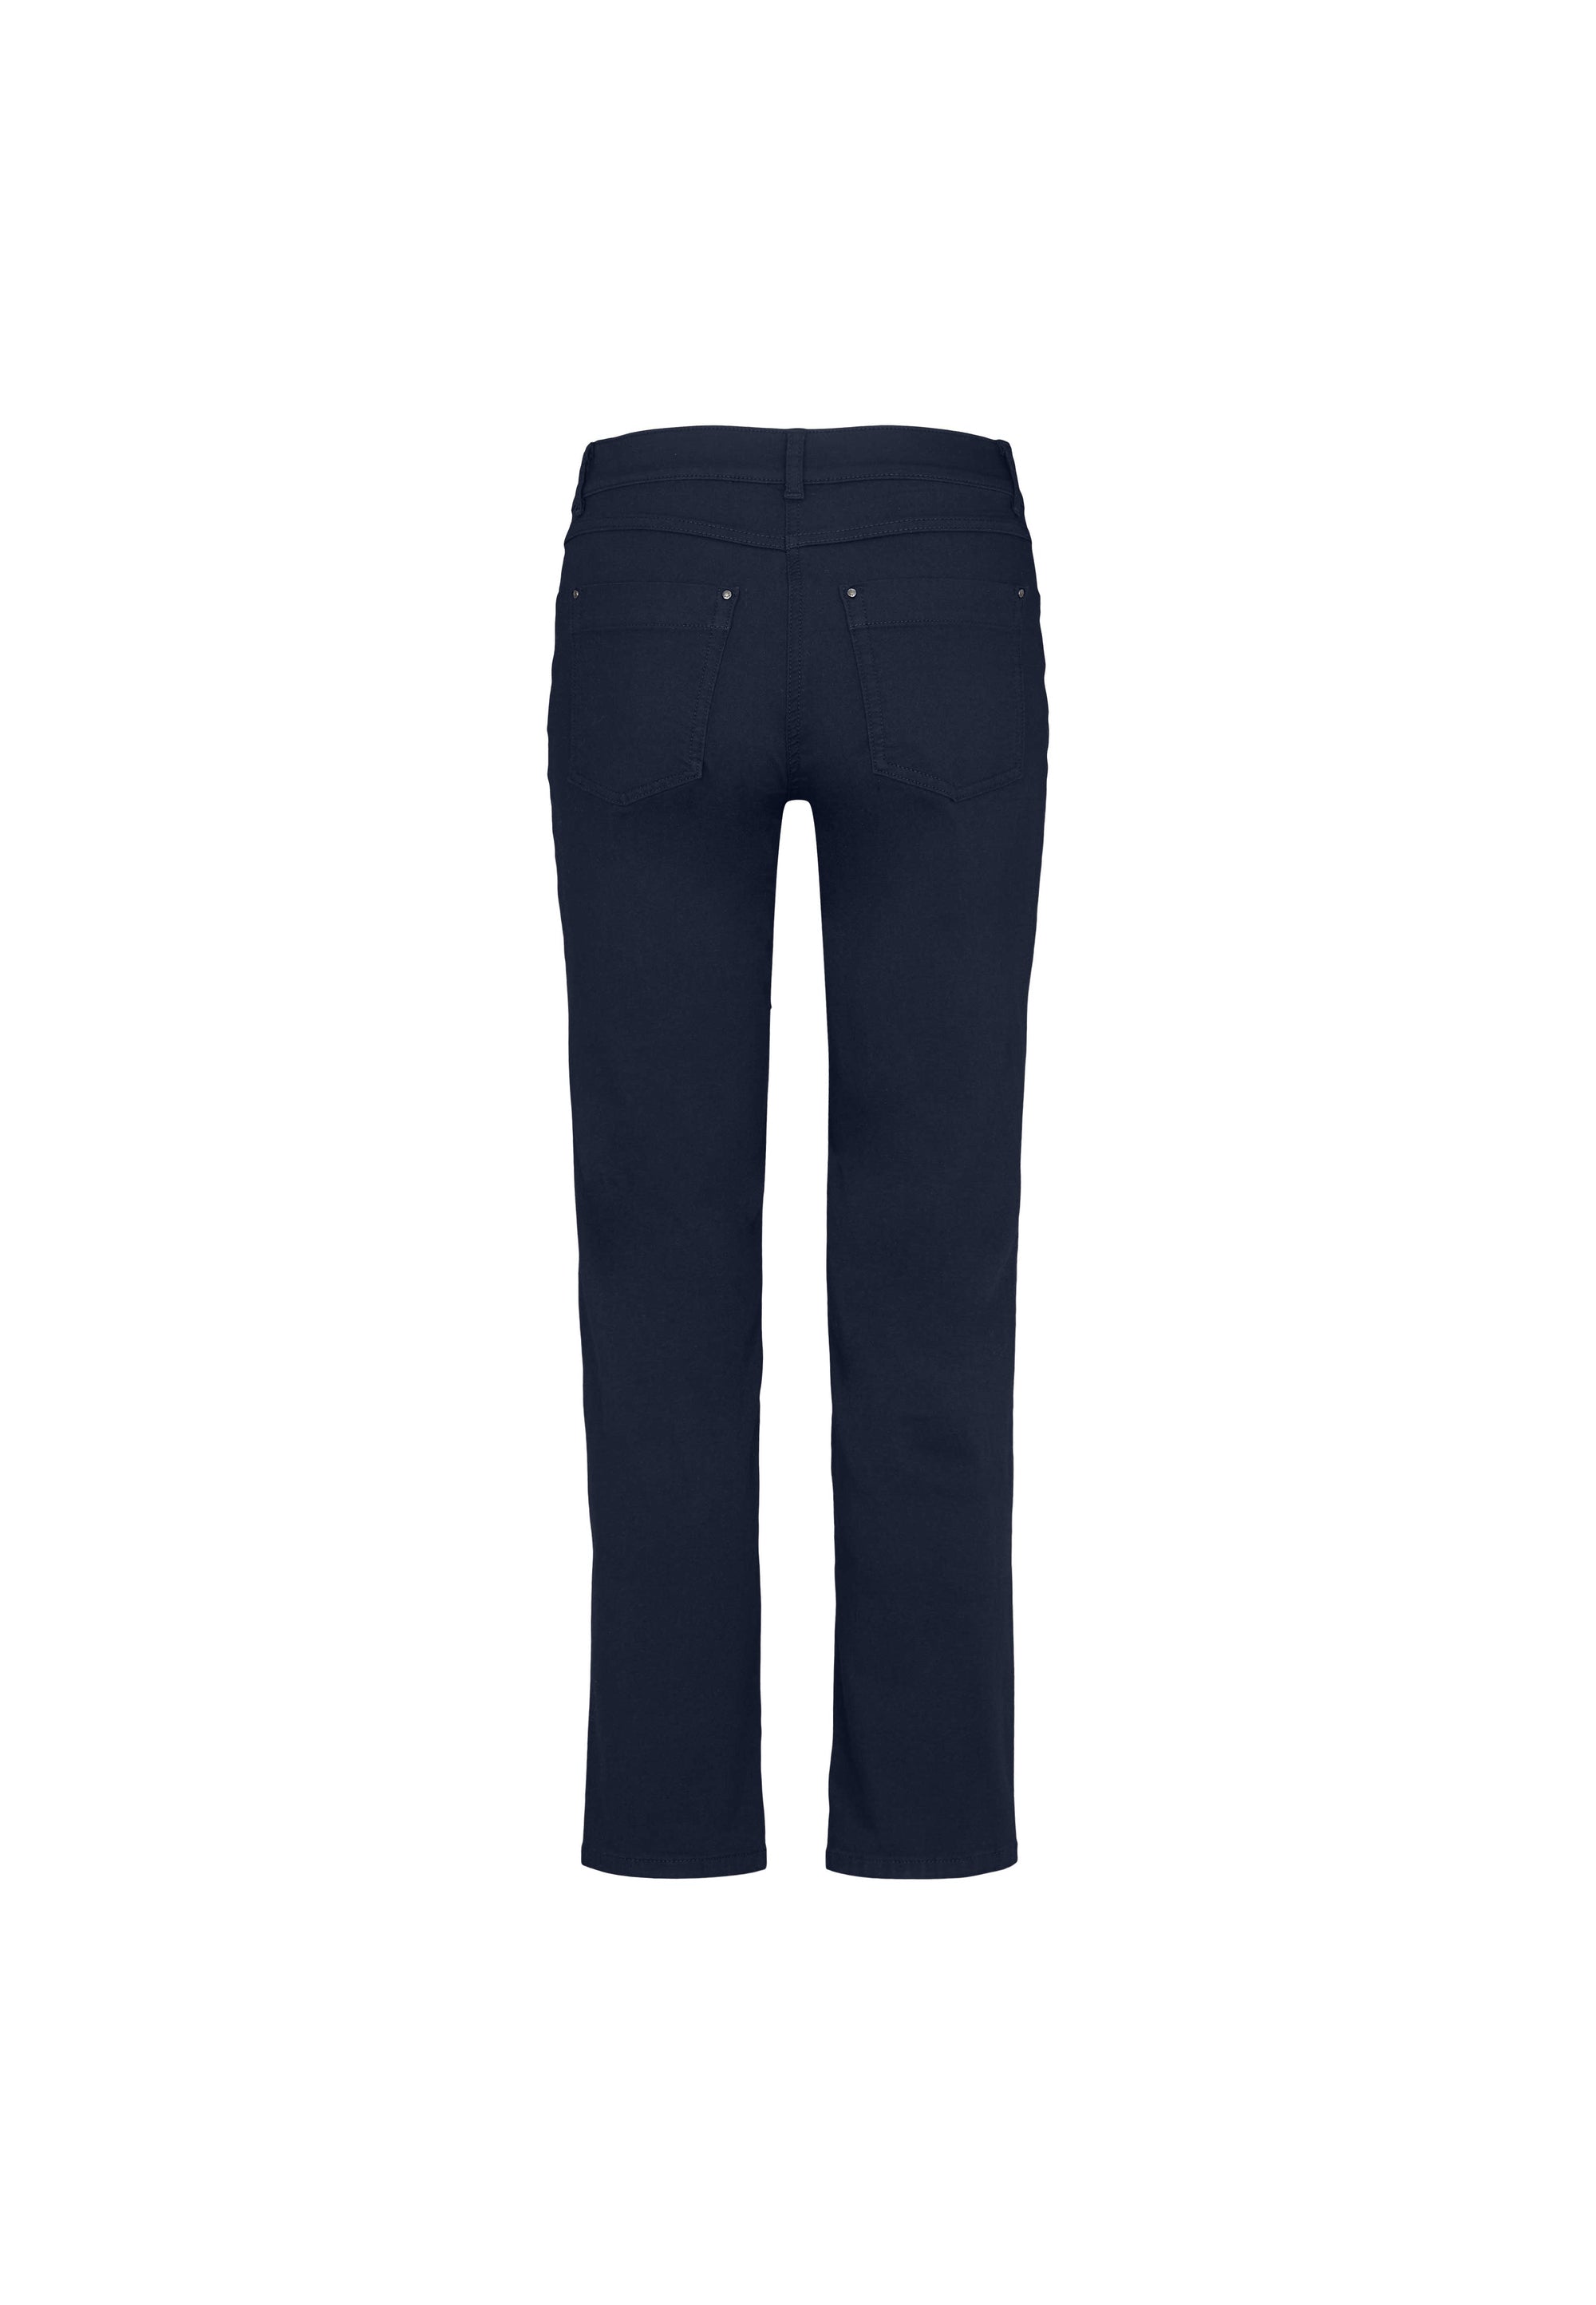 LAURIE Charlotte Regular - Short Length Trousers REGULAR 49200 Navy